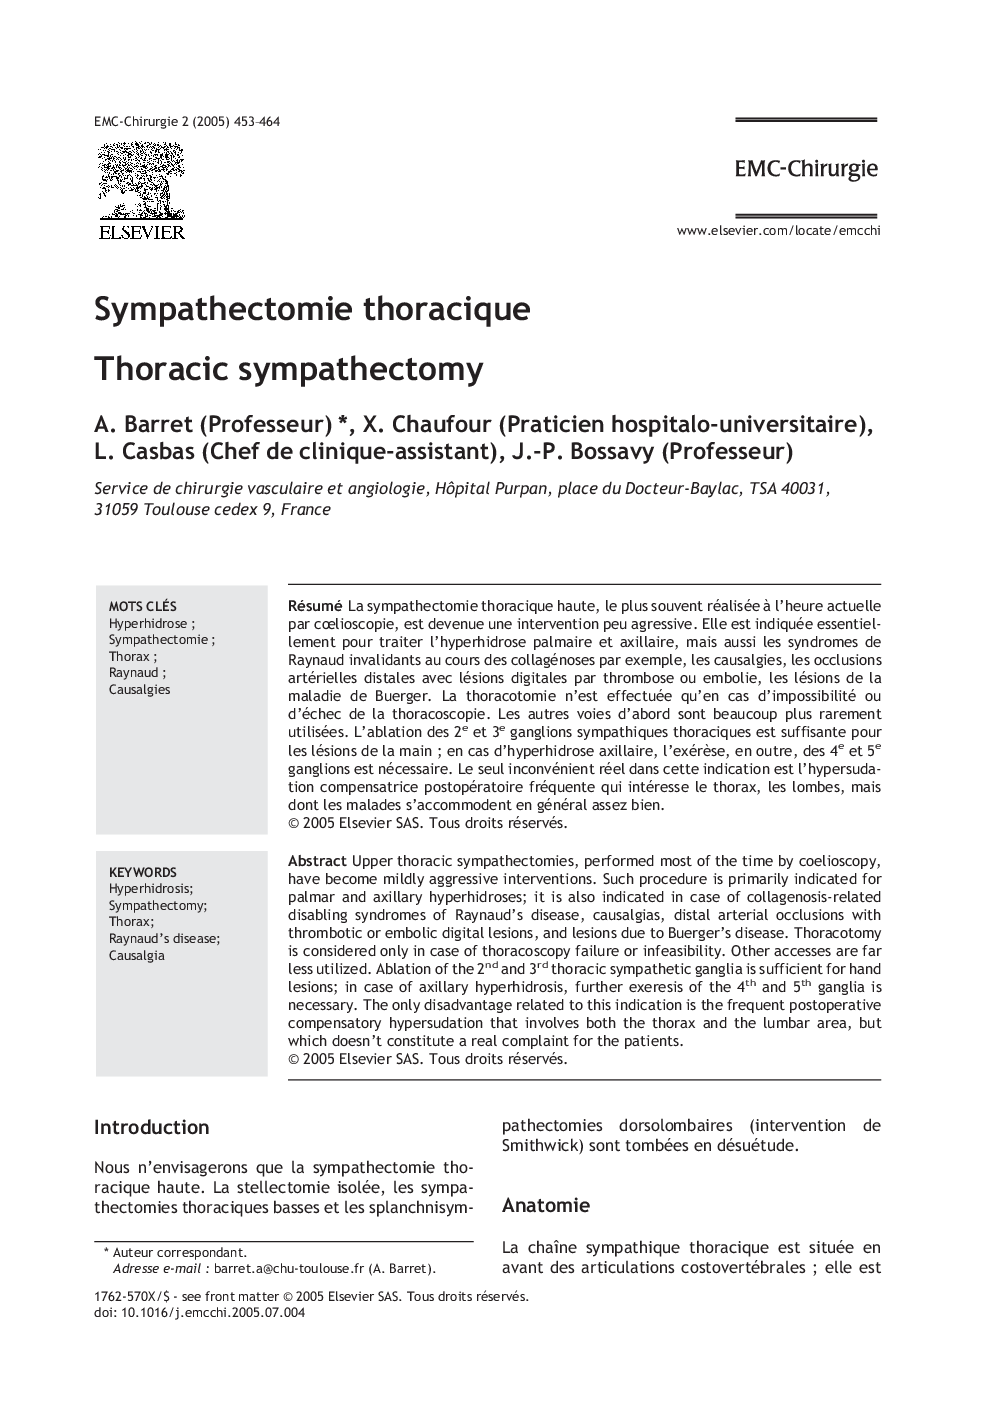 Sympathectomie thoracique